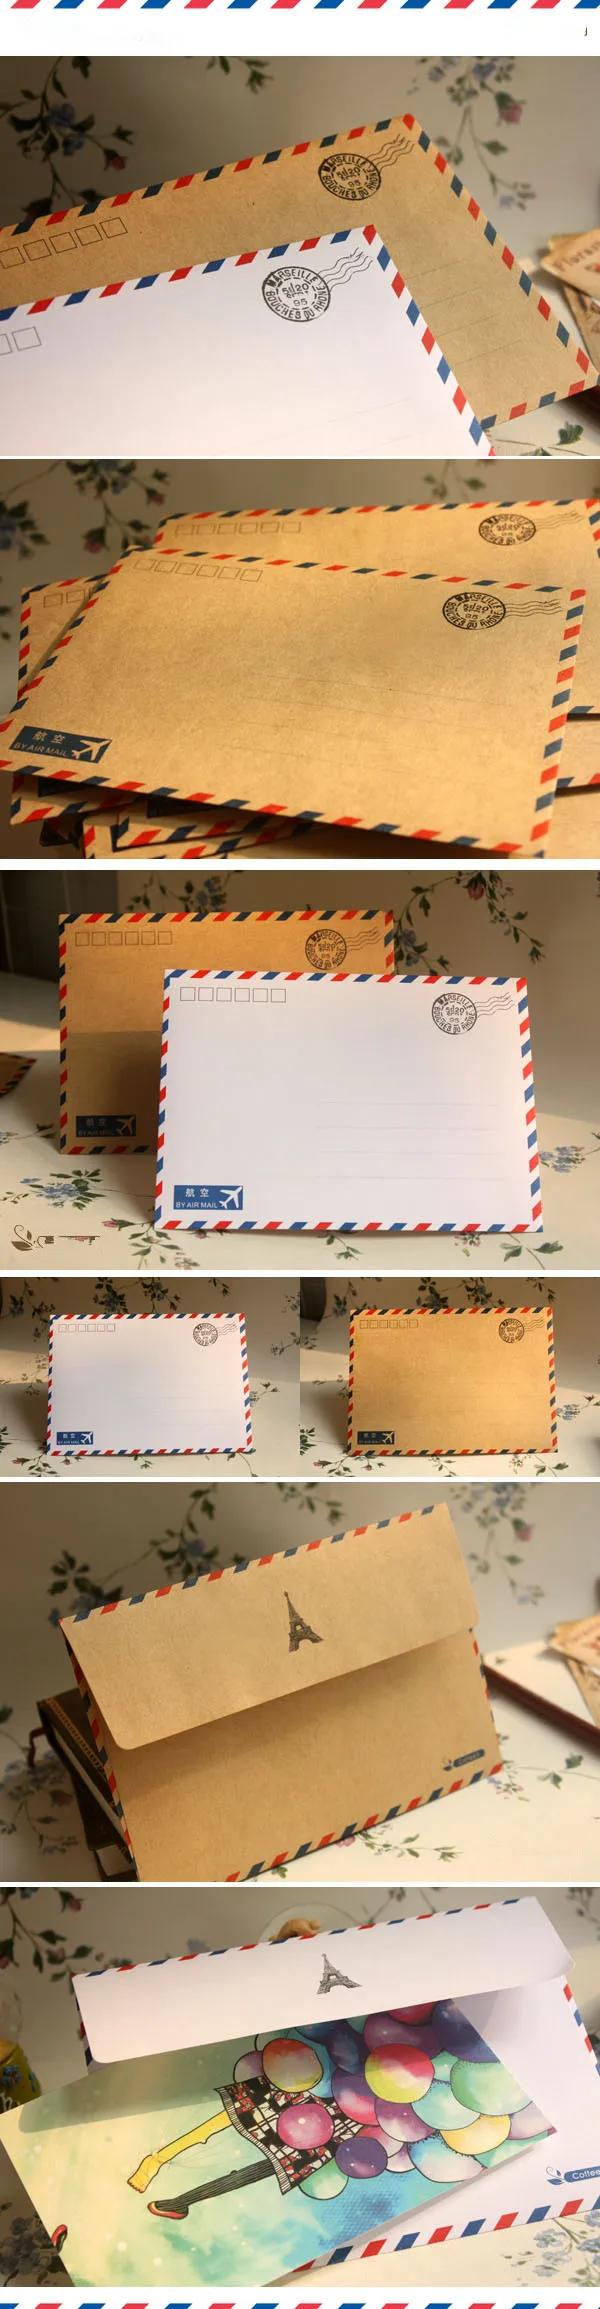 Coloffice 10 шт./лот большая открытка письмо канцелярские бумаги крафт конверт Винтаж кошелек конверт для студент, школа, офис подарок